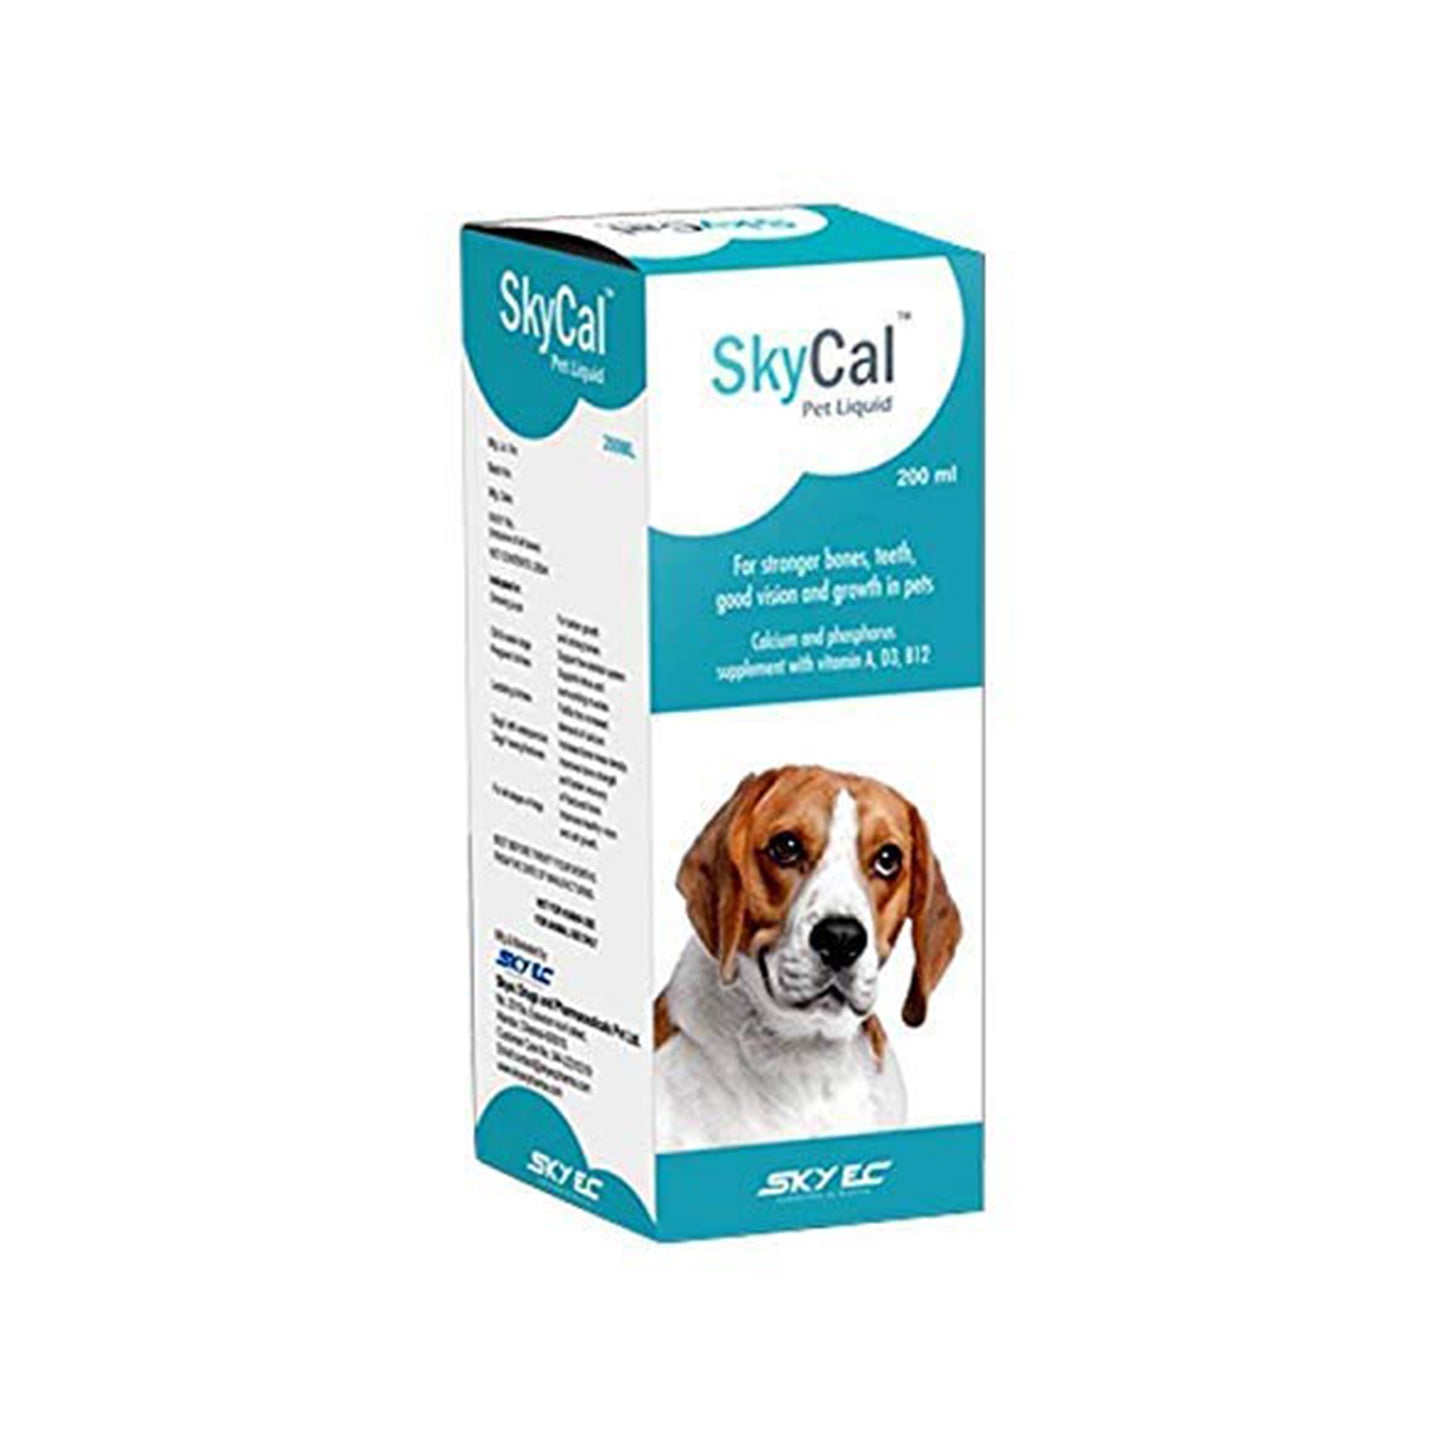 Skyec -  Skycal Pet Liquid